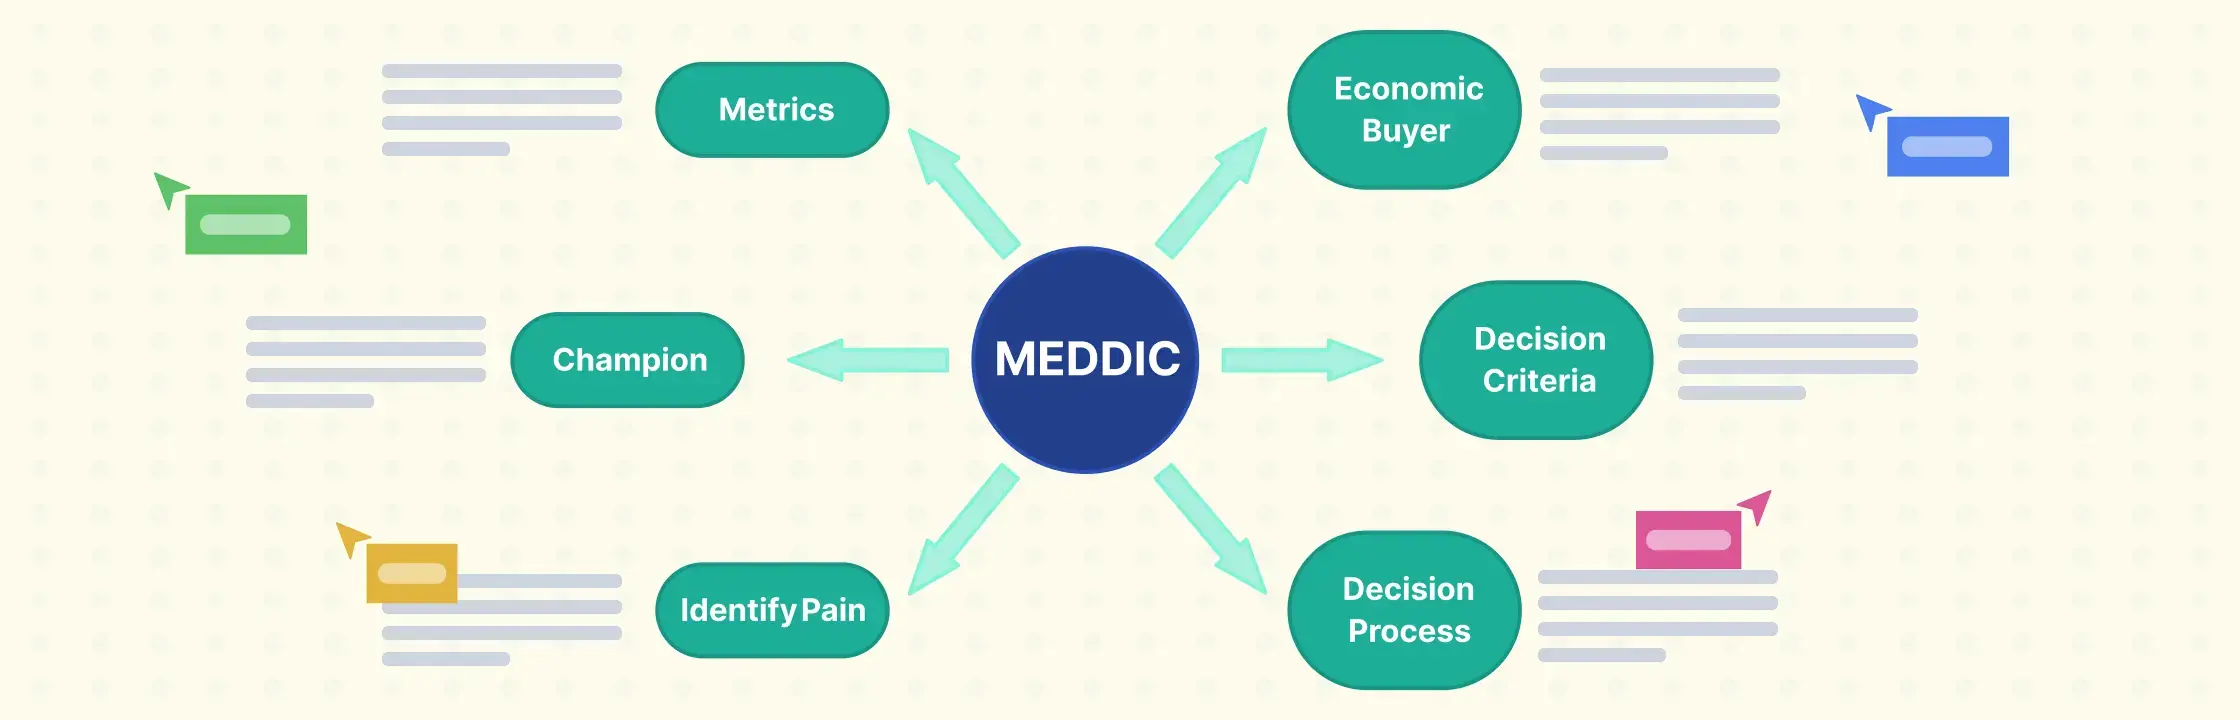 How MEDDIC Sales Process Helps Teams Close More Deals